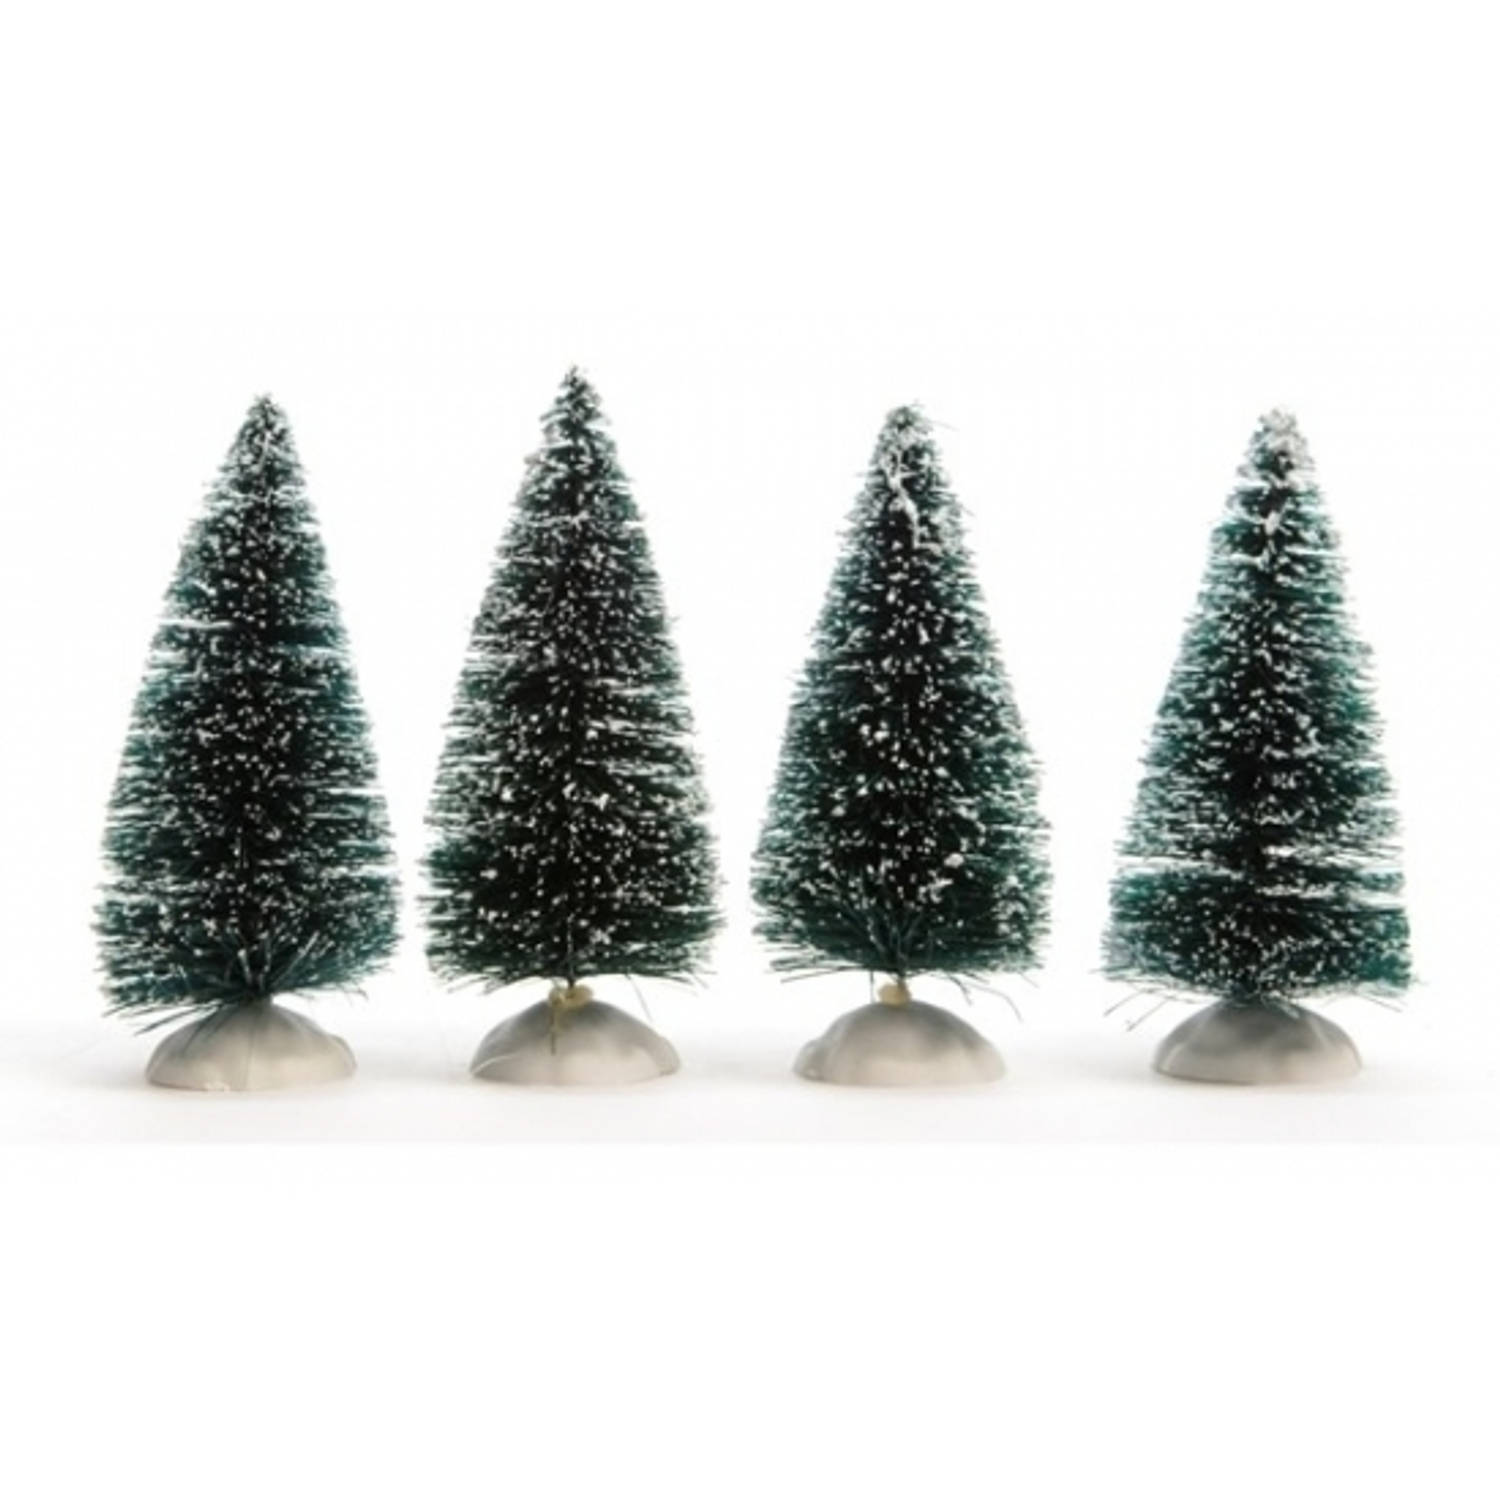 Miniatuur boompjes met sneeuw 4 stuks